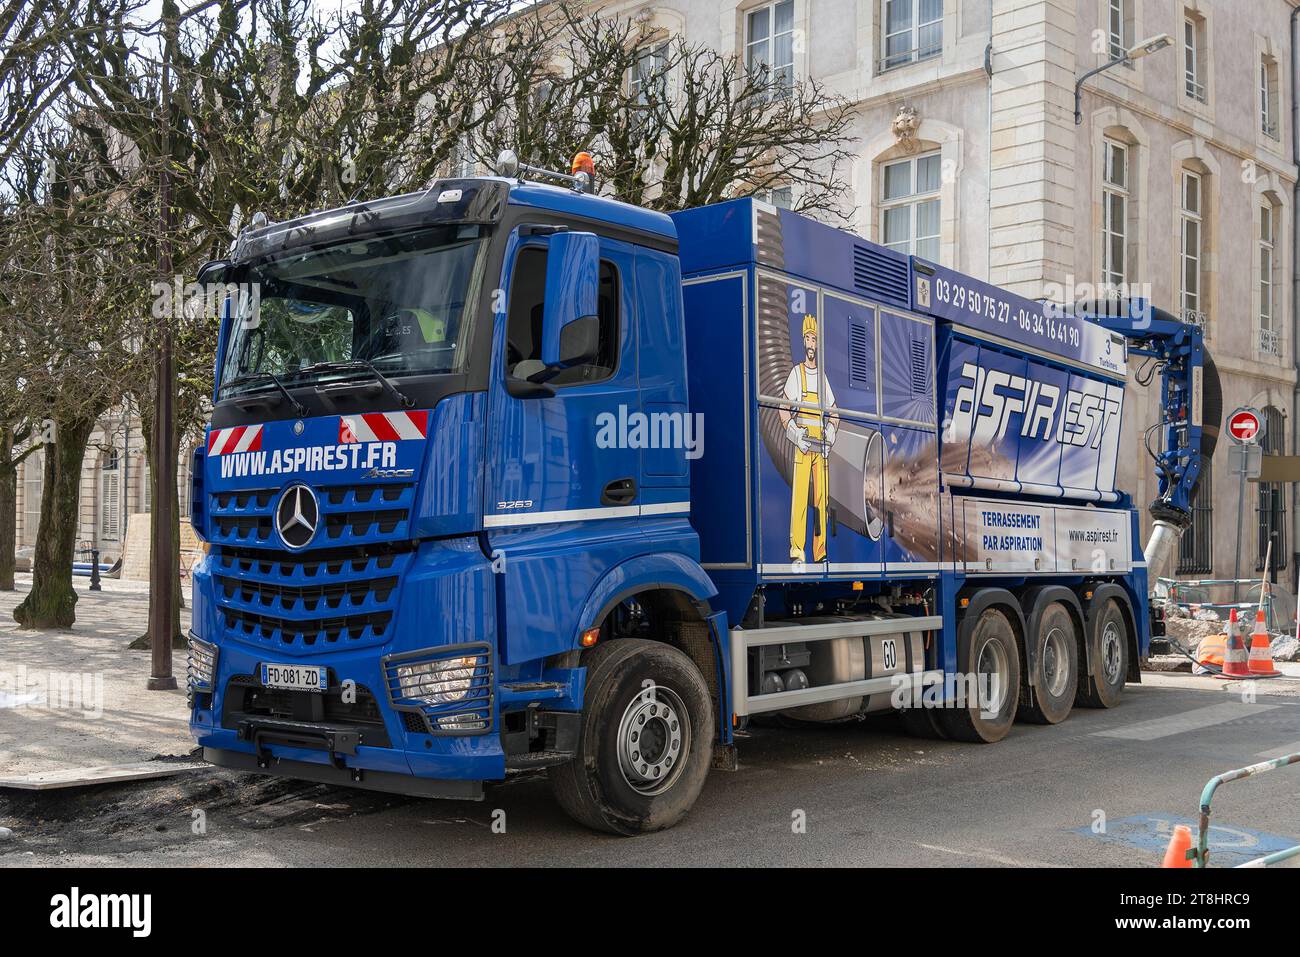 Nancy, France - camion excavateur d'aspiration bleu Mercedes-Benz Arocs 3263 sur un chantier dans une rue. Banque D'Images